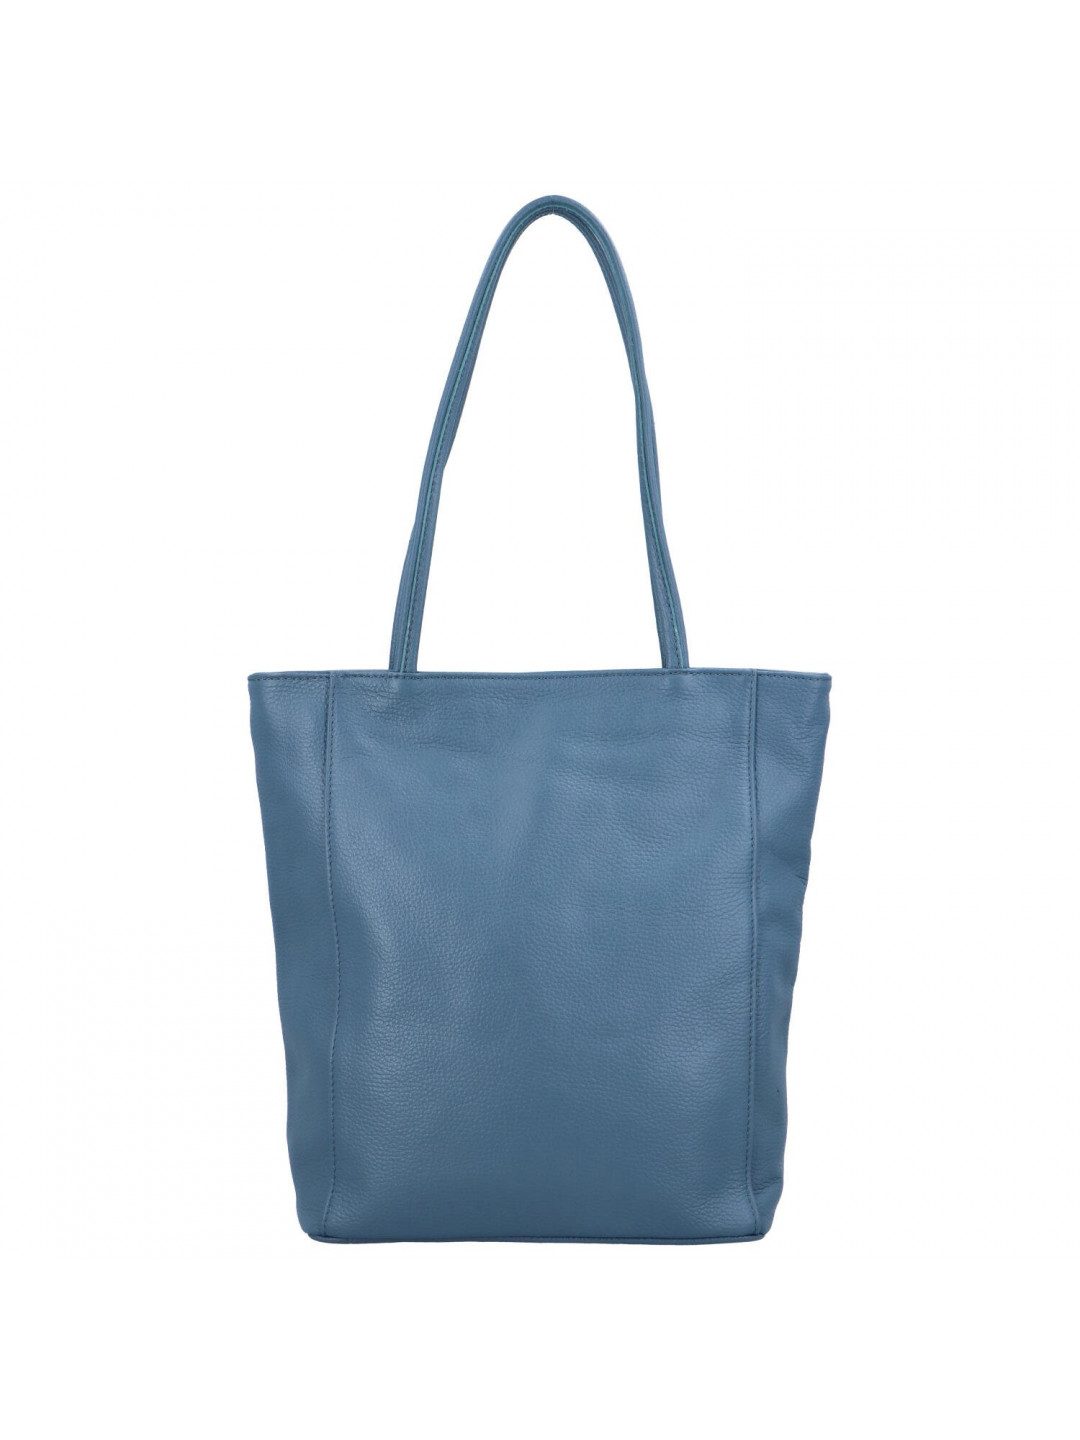 Luxusní dámská kožená kabelka Jane světle modrá